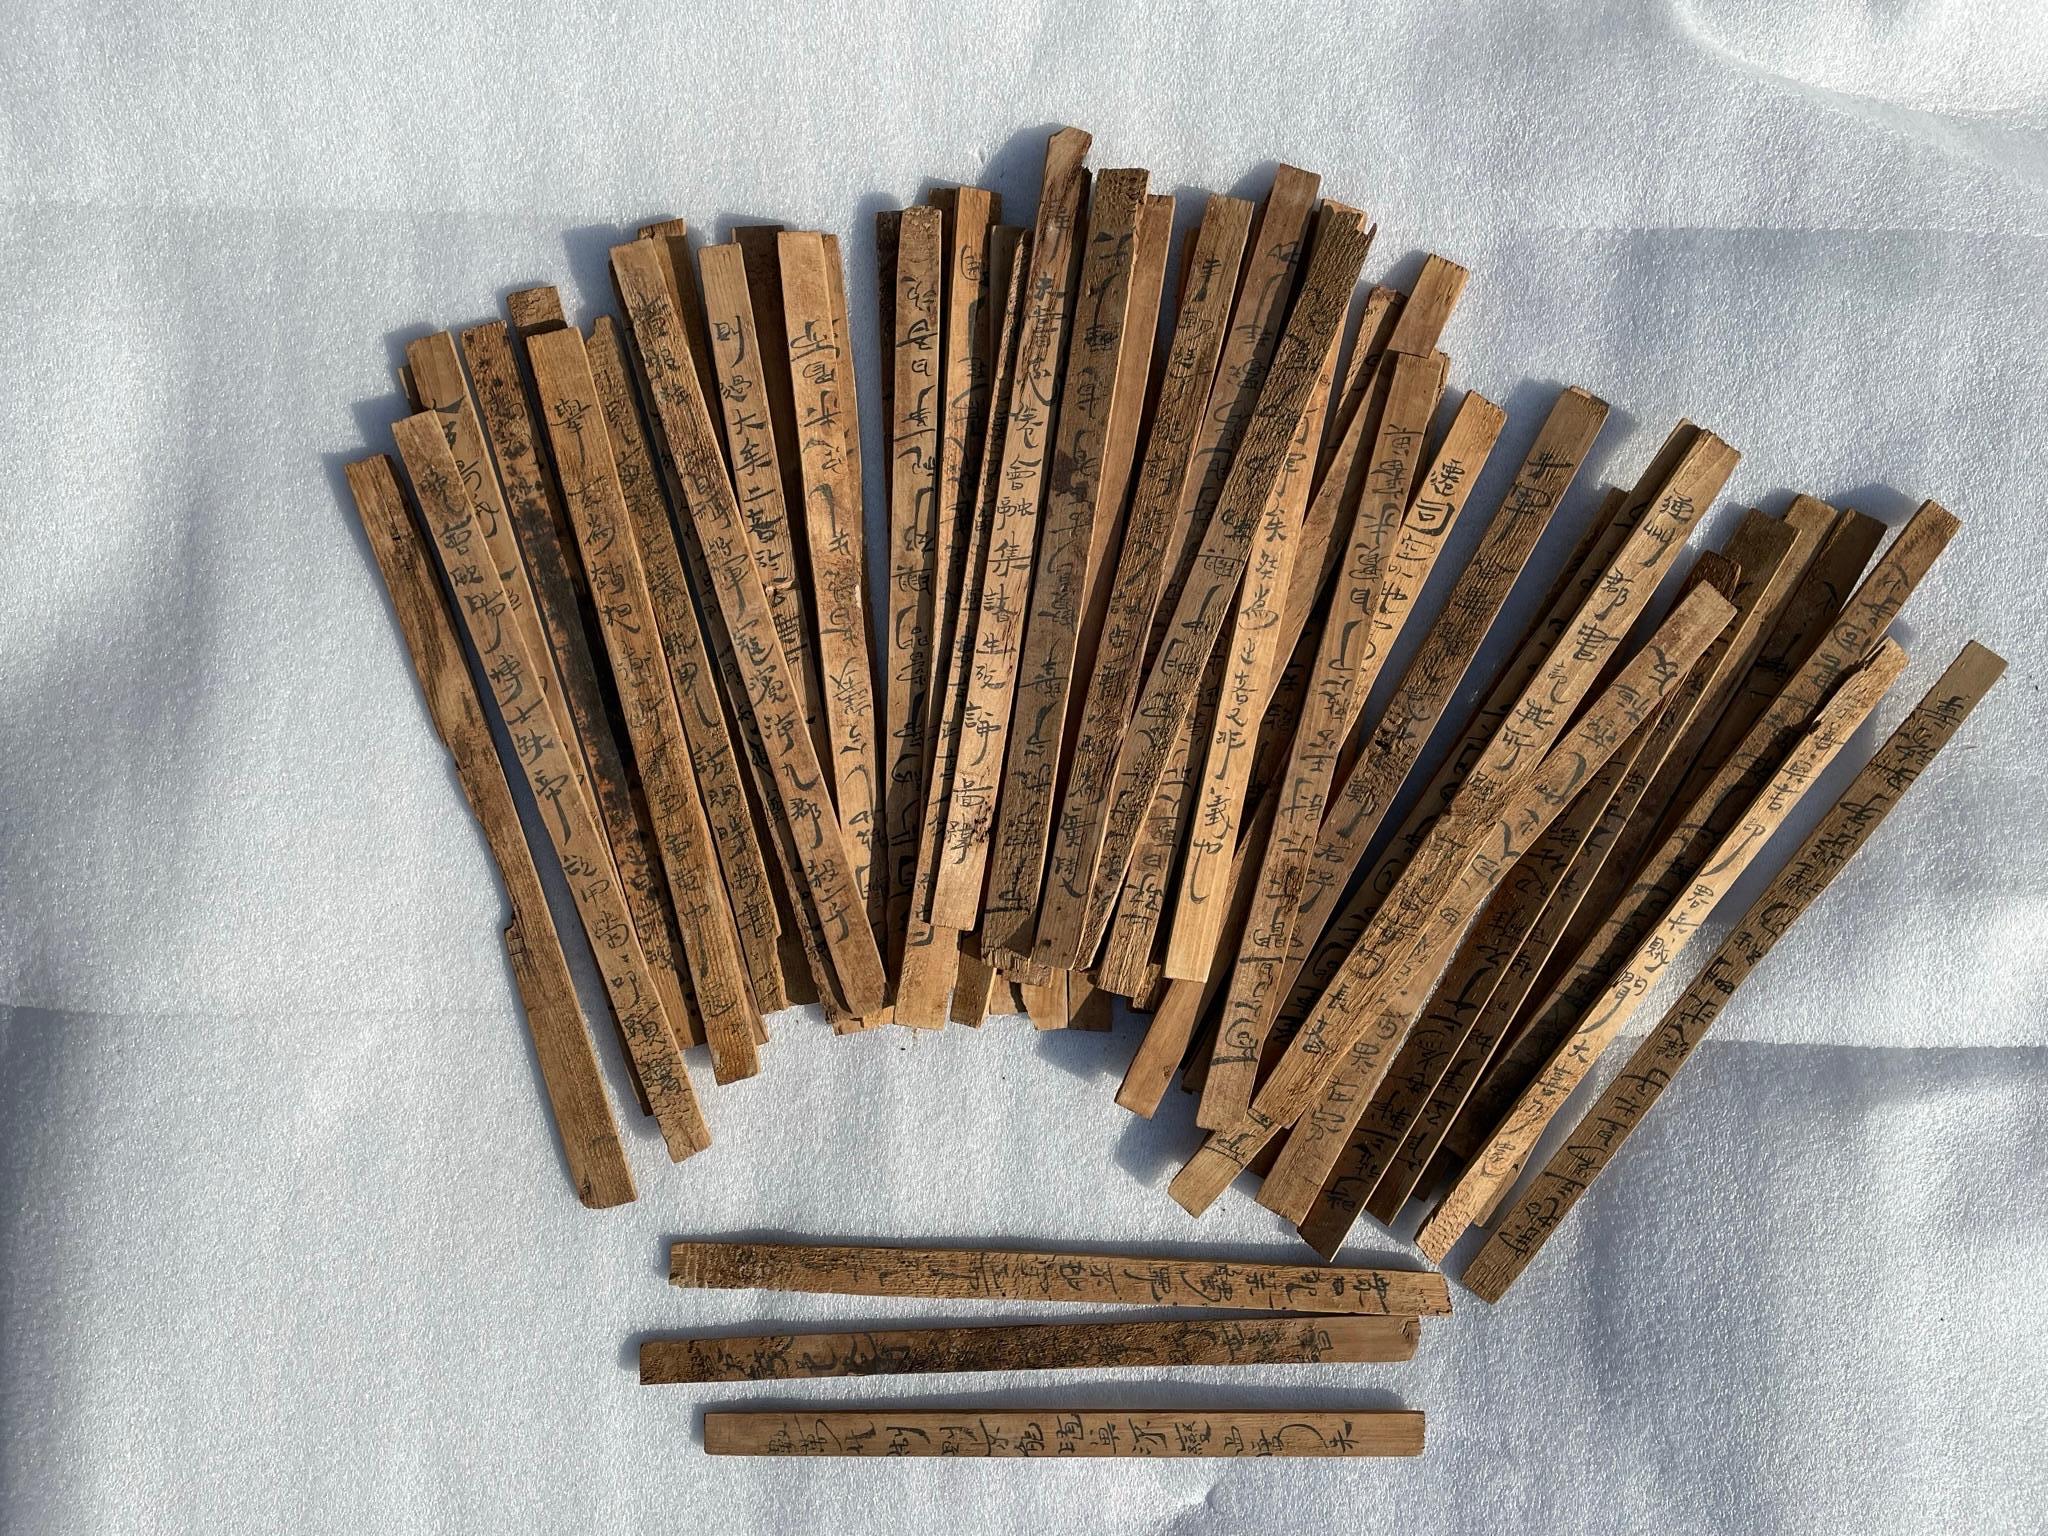 Les feuillets de bambou et de bois - jiandú - étaient les principaux supports d'écriture en Chine avant l'introduction généralisée du papier au cours des deux premiers siècles de notre ère.

Cet important groupe, 59 pièces, de feuillets uniques avec